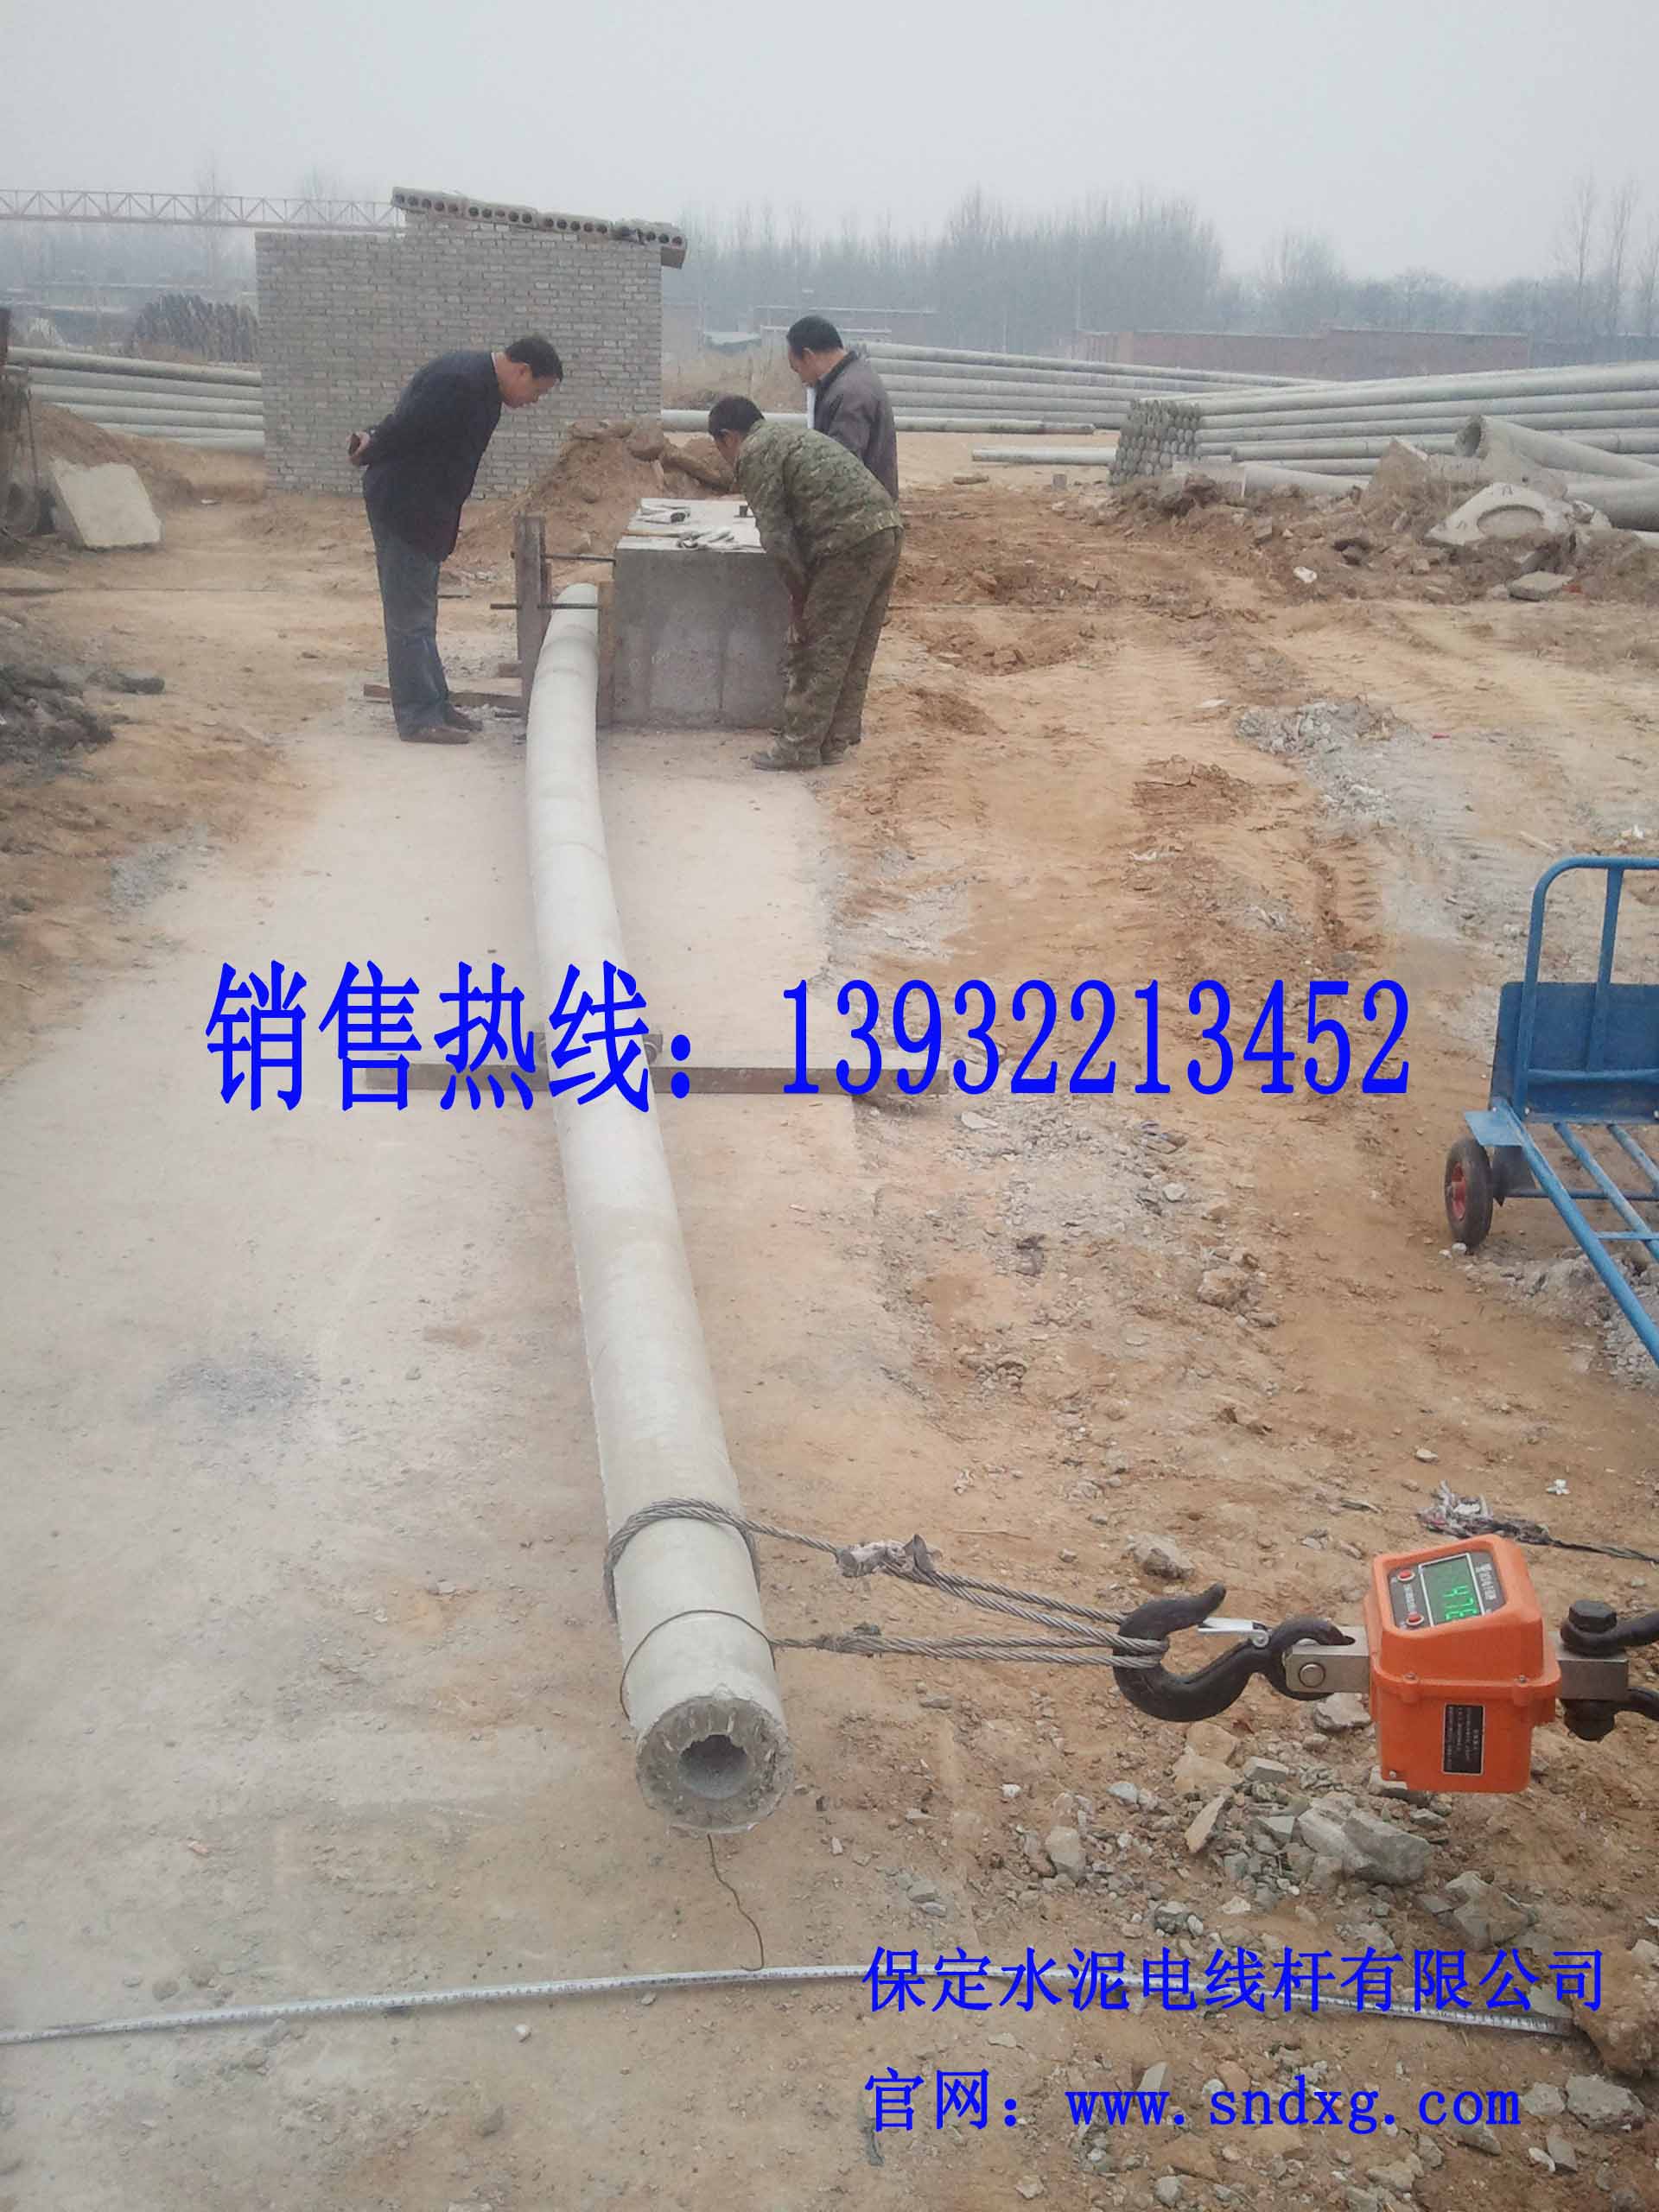 供应用于国家电网的10米加强型水泥电杆价格  石家庄电杆厂家图片